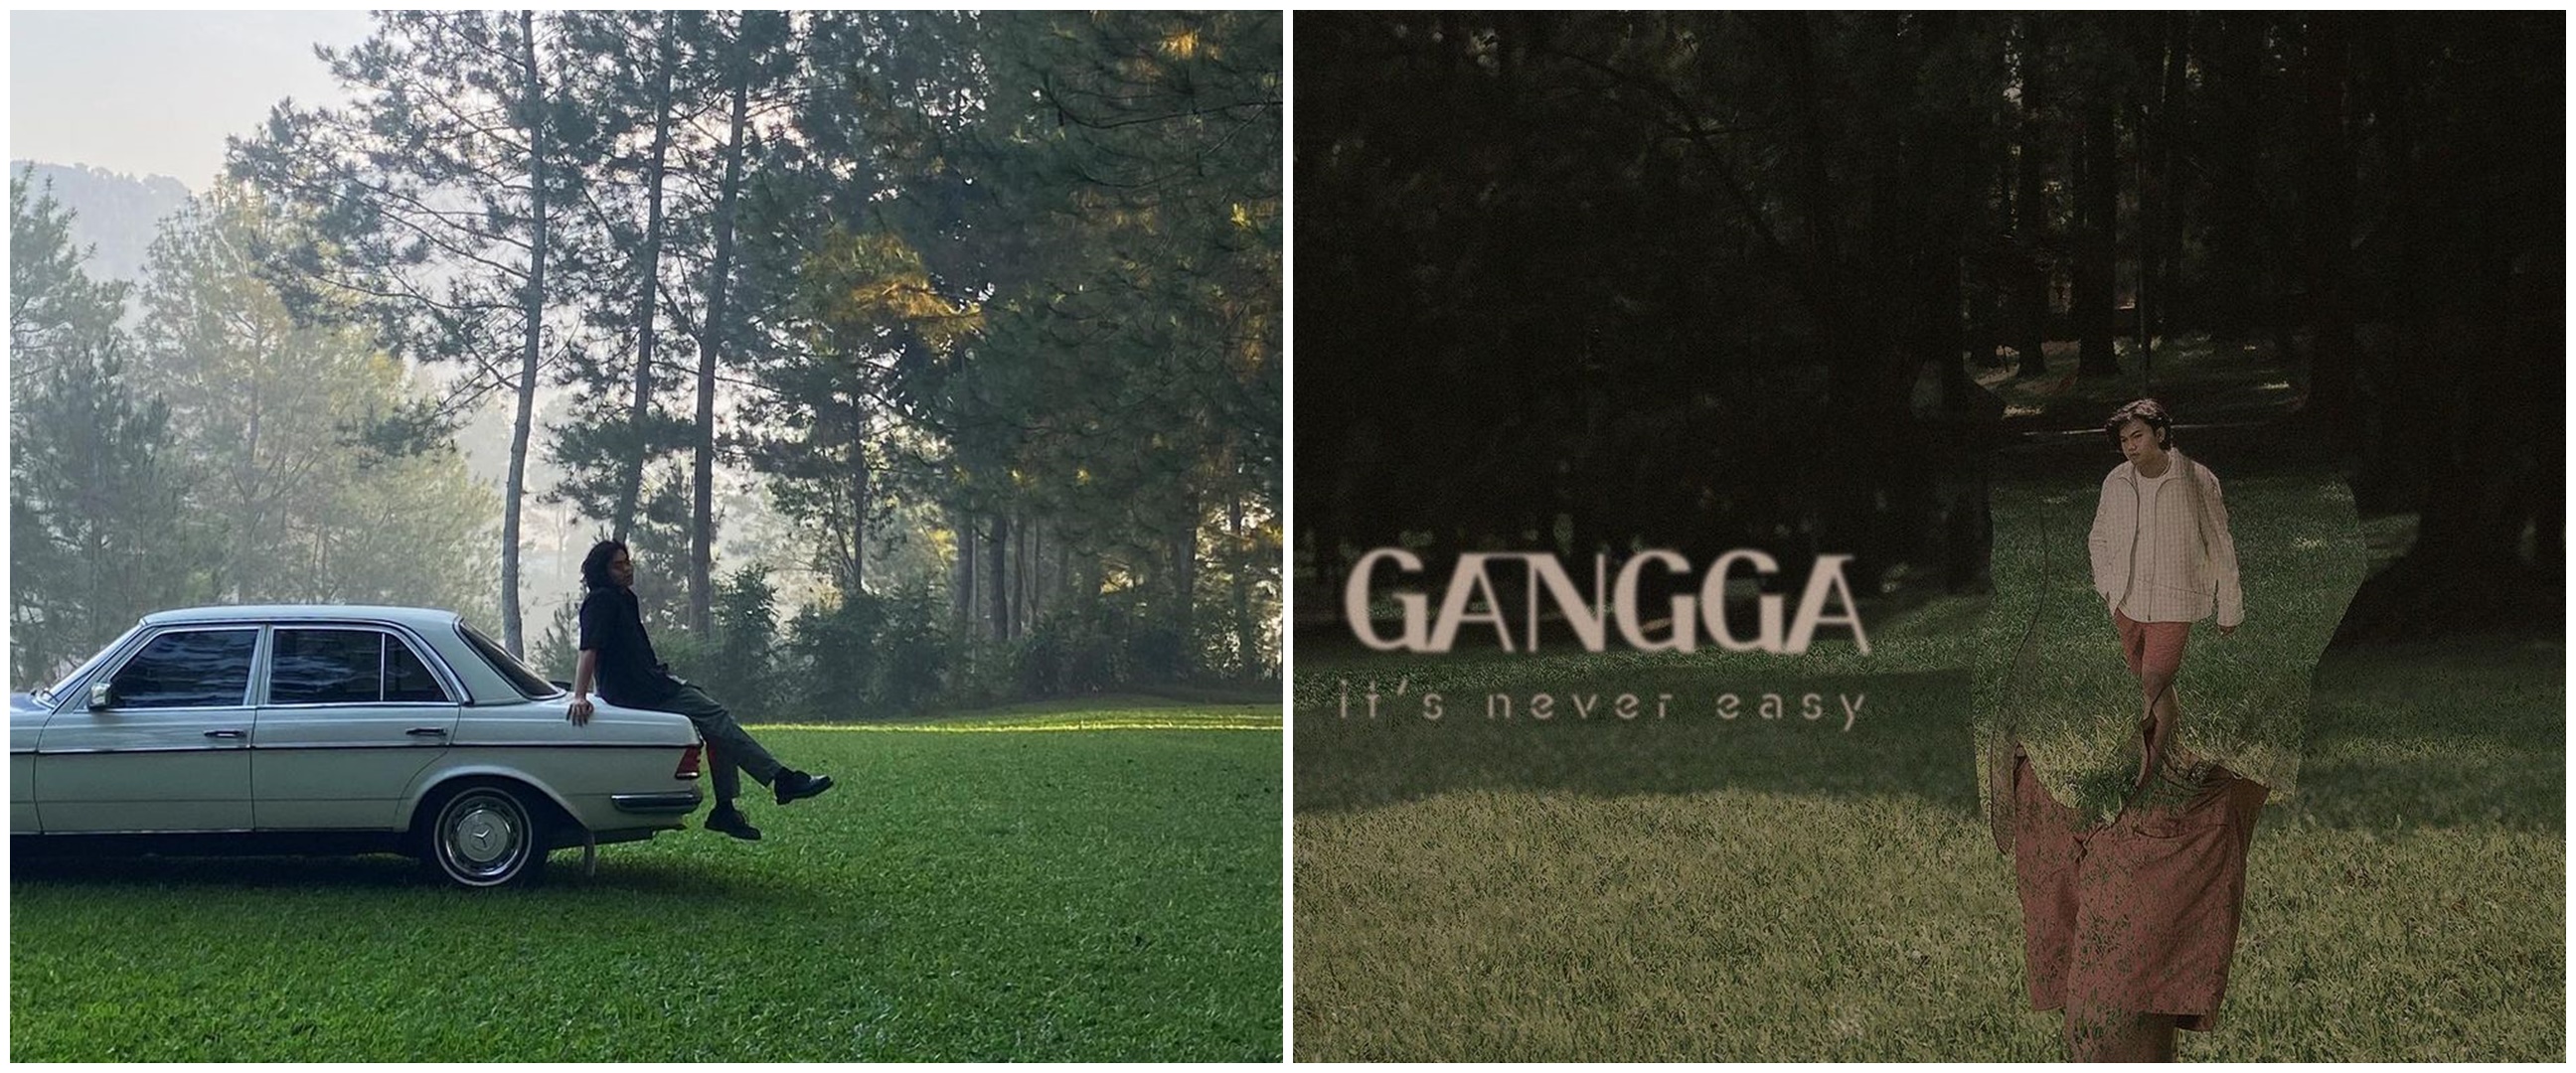 Nikmati patah hati lewat album perdana Gangga "It's Never Easy"